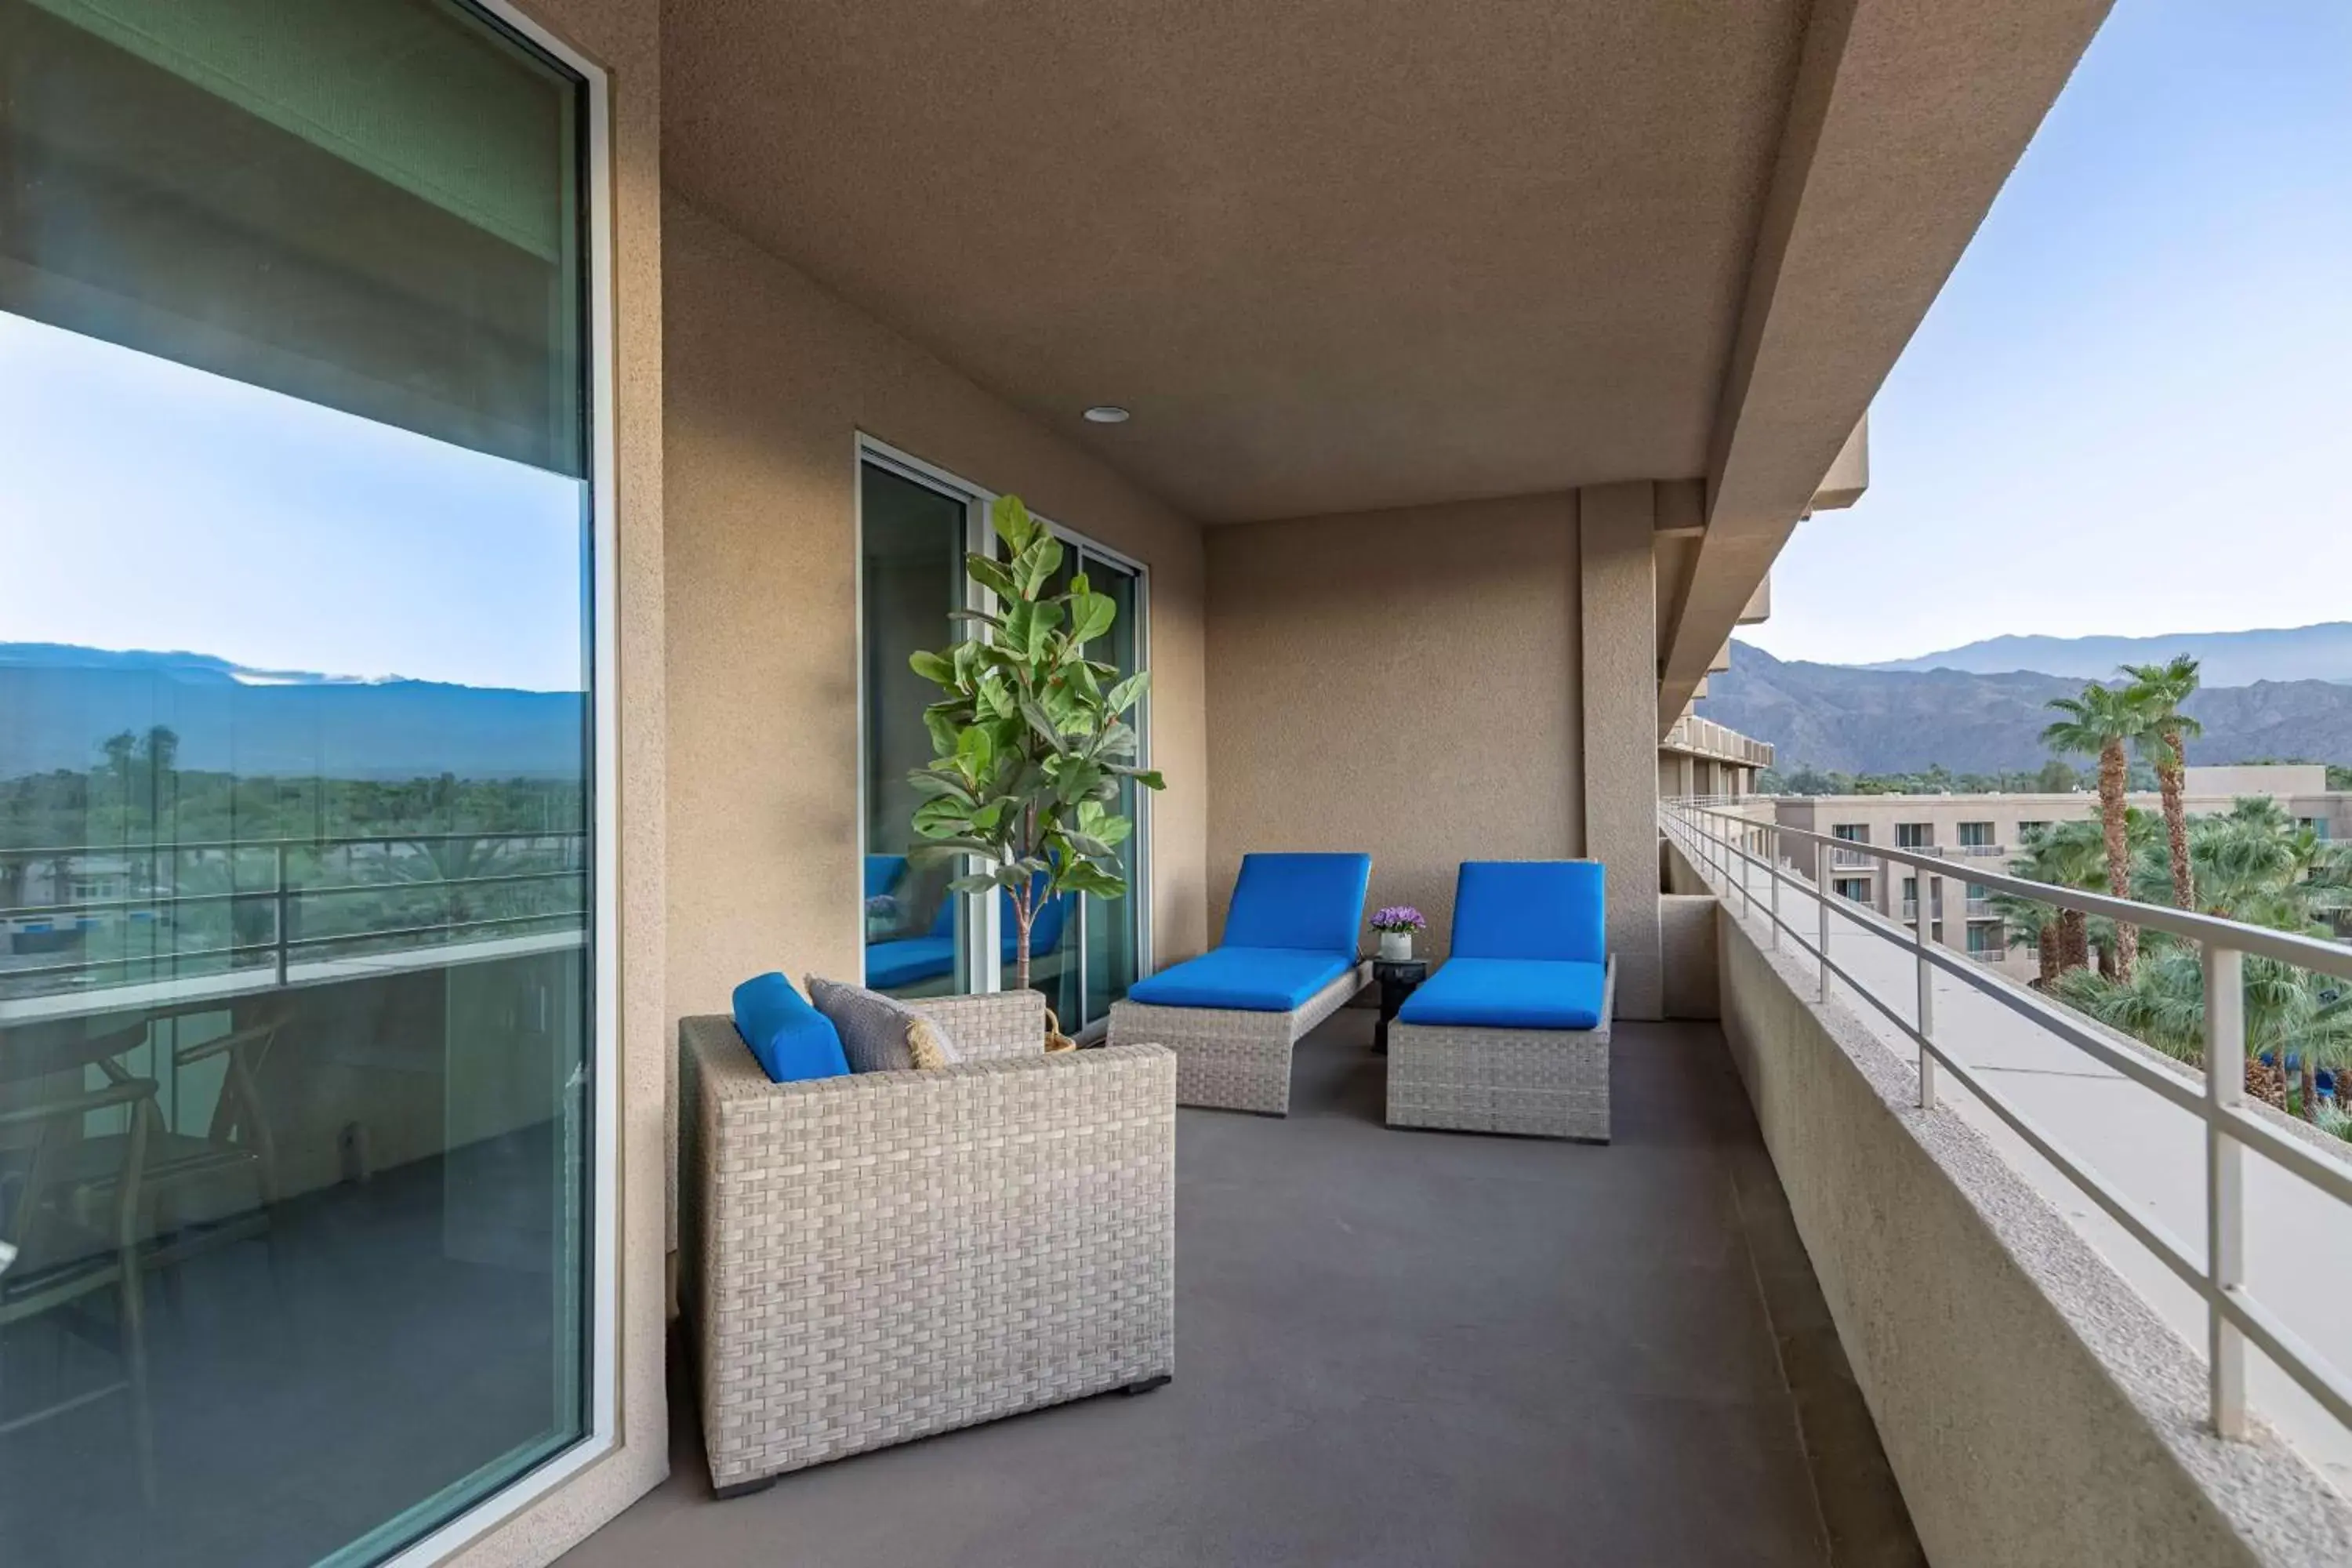 Photo of the whole room, Balcony/Terrace in Hyatt Regency Indian Wells Resort & Spa